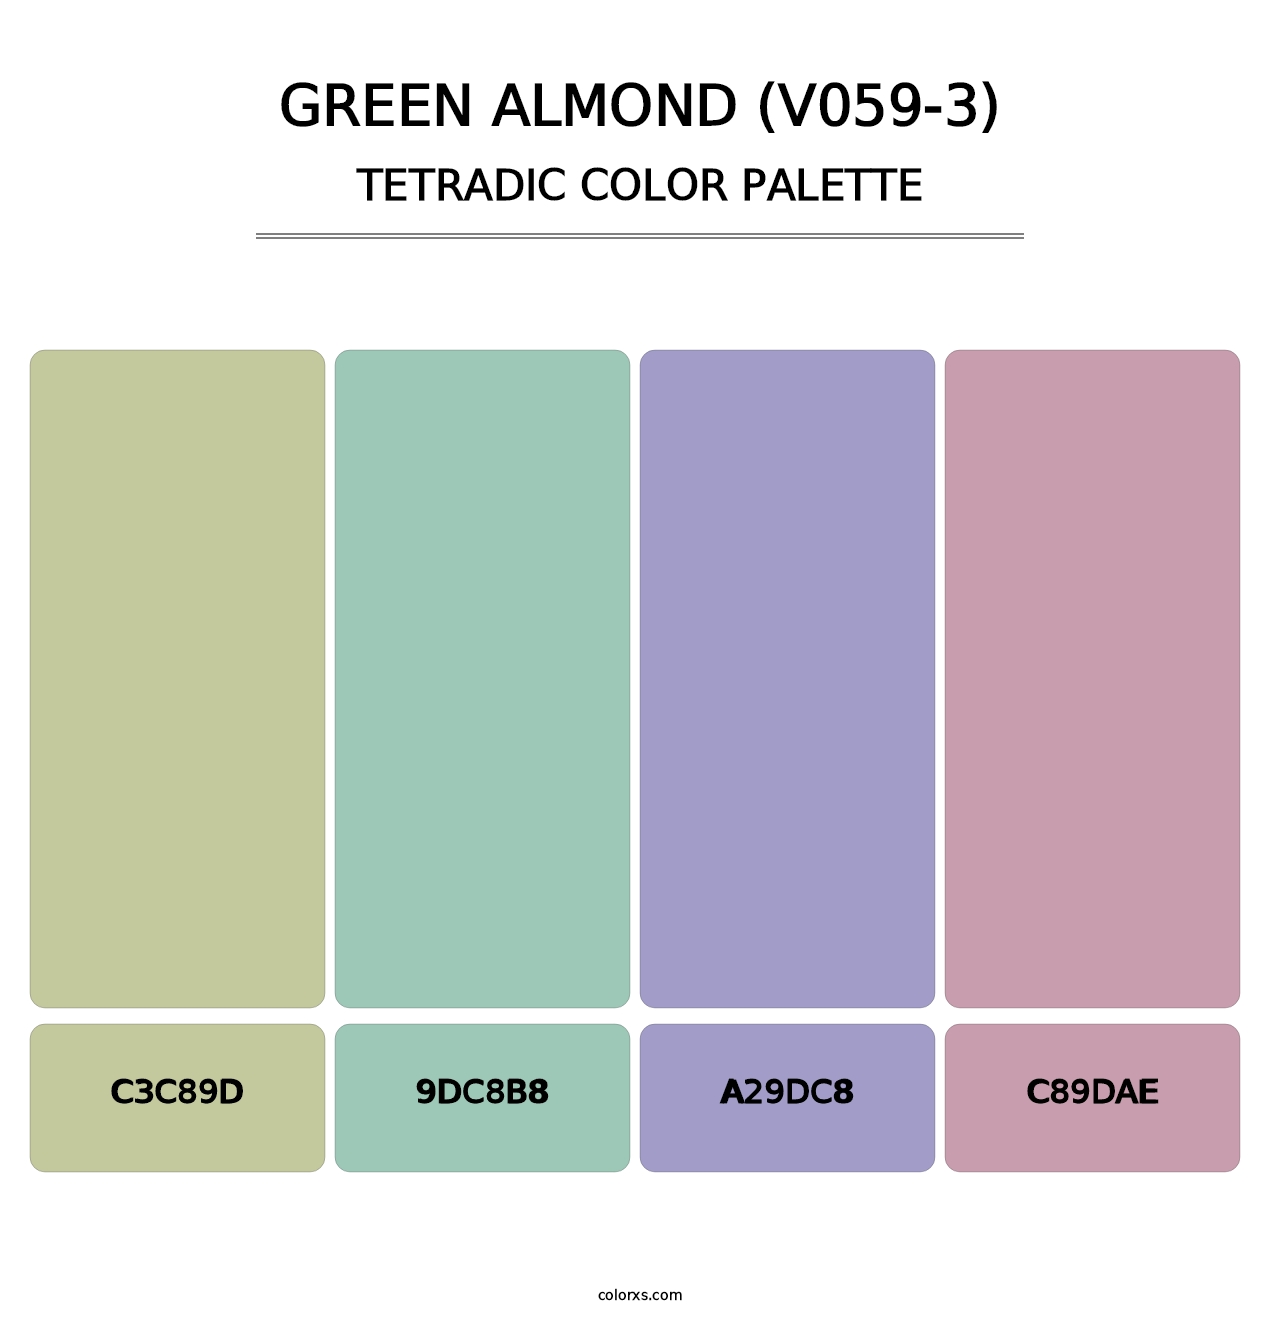 Green Almond (V059-3) - Tetradic Color Palette